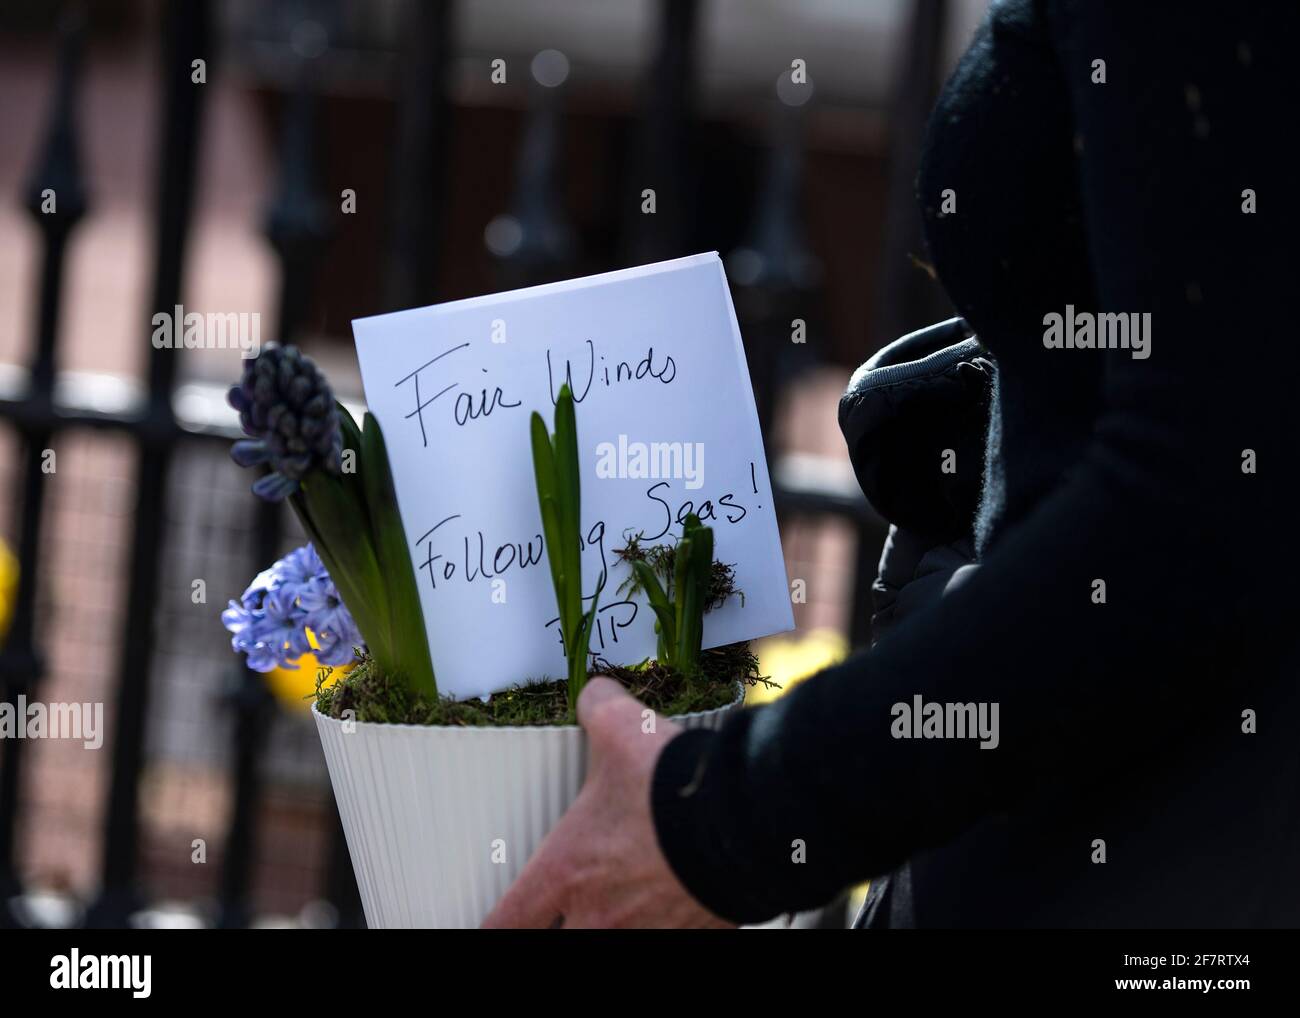 London, England, Großbritannien - 9. April 2021: Blumenauflegung für Prinz Philip, Herzog von Edinburgh, am Buckingham Palace Tor Credit: Loredana Sangiuliano / Alamy Live News Stockfoto